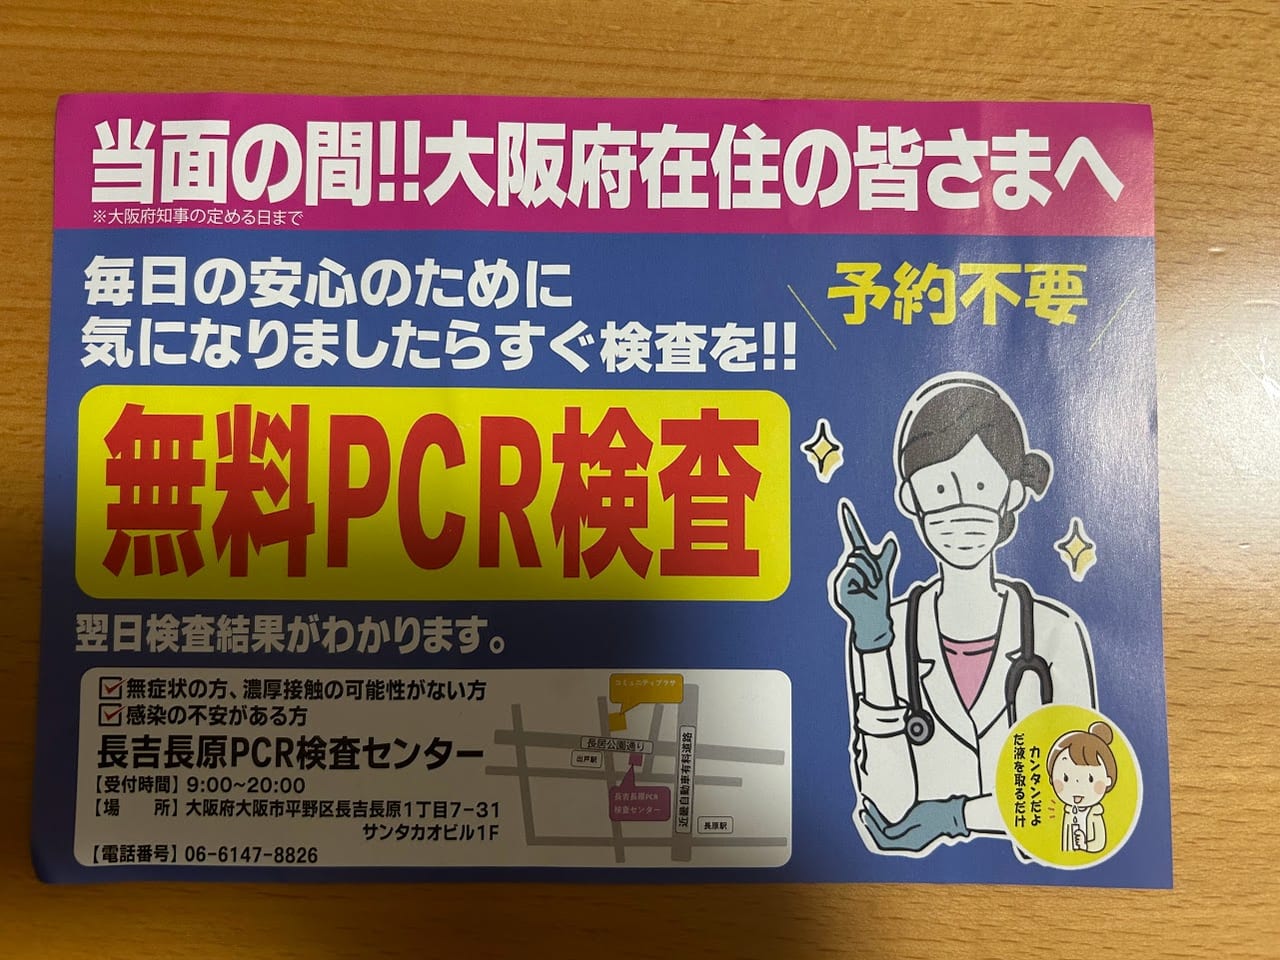 長吉長原PCR検査センターお知らせ